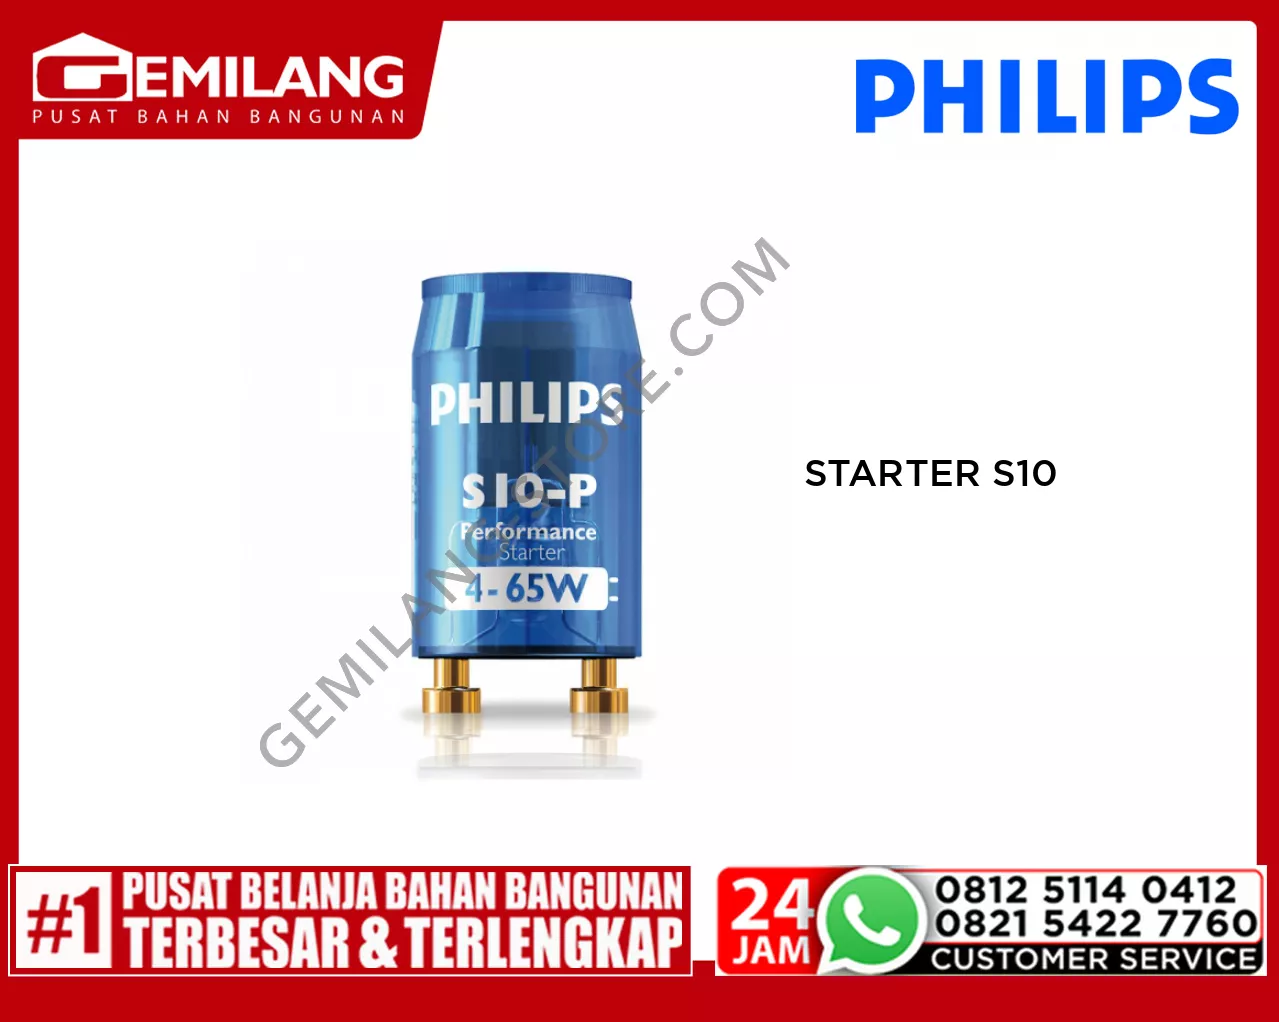 PHILIPS STARTER S10